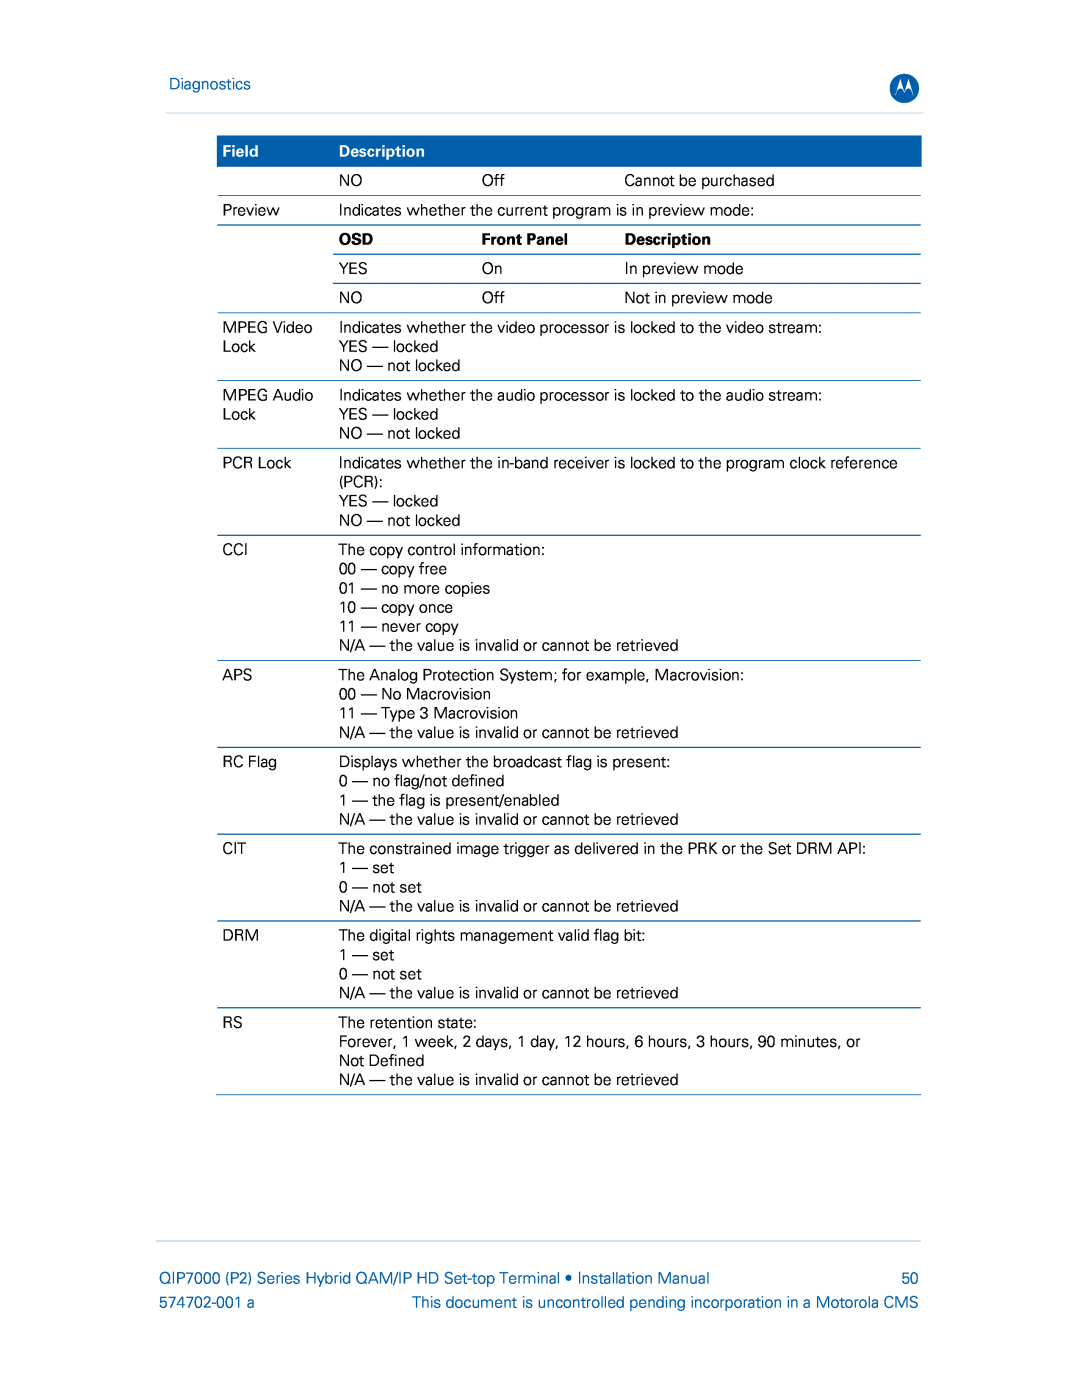 Motorola QIP7000 installation manual Diagnostics, Field, Description, Front Panel, 574702-001 a 